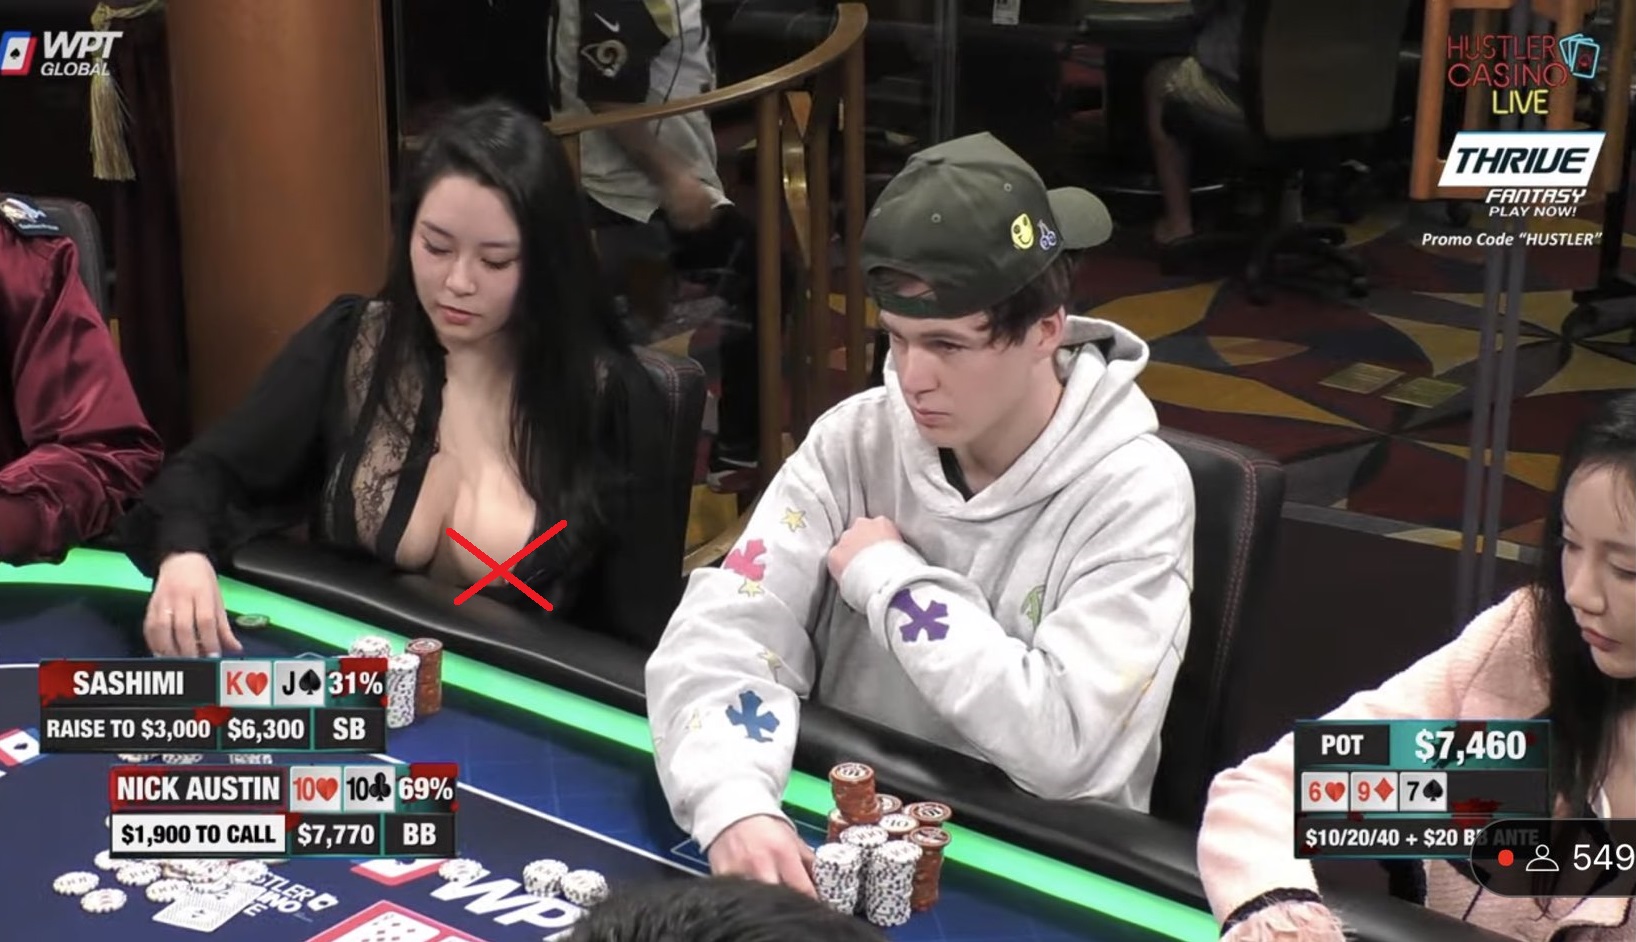 Sashimi Poker Exposed on ‘Hustler Casino Live,’ Nip Slip Sets Twitter Alight